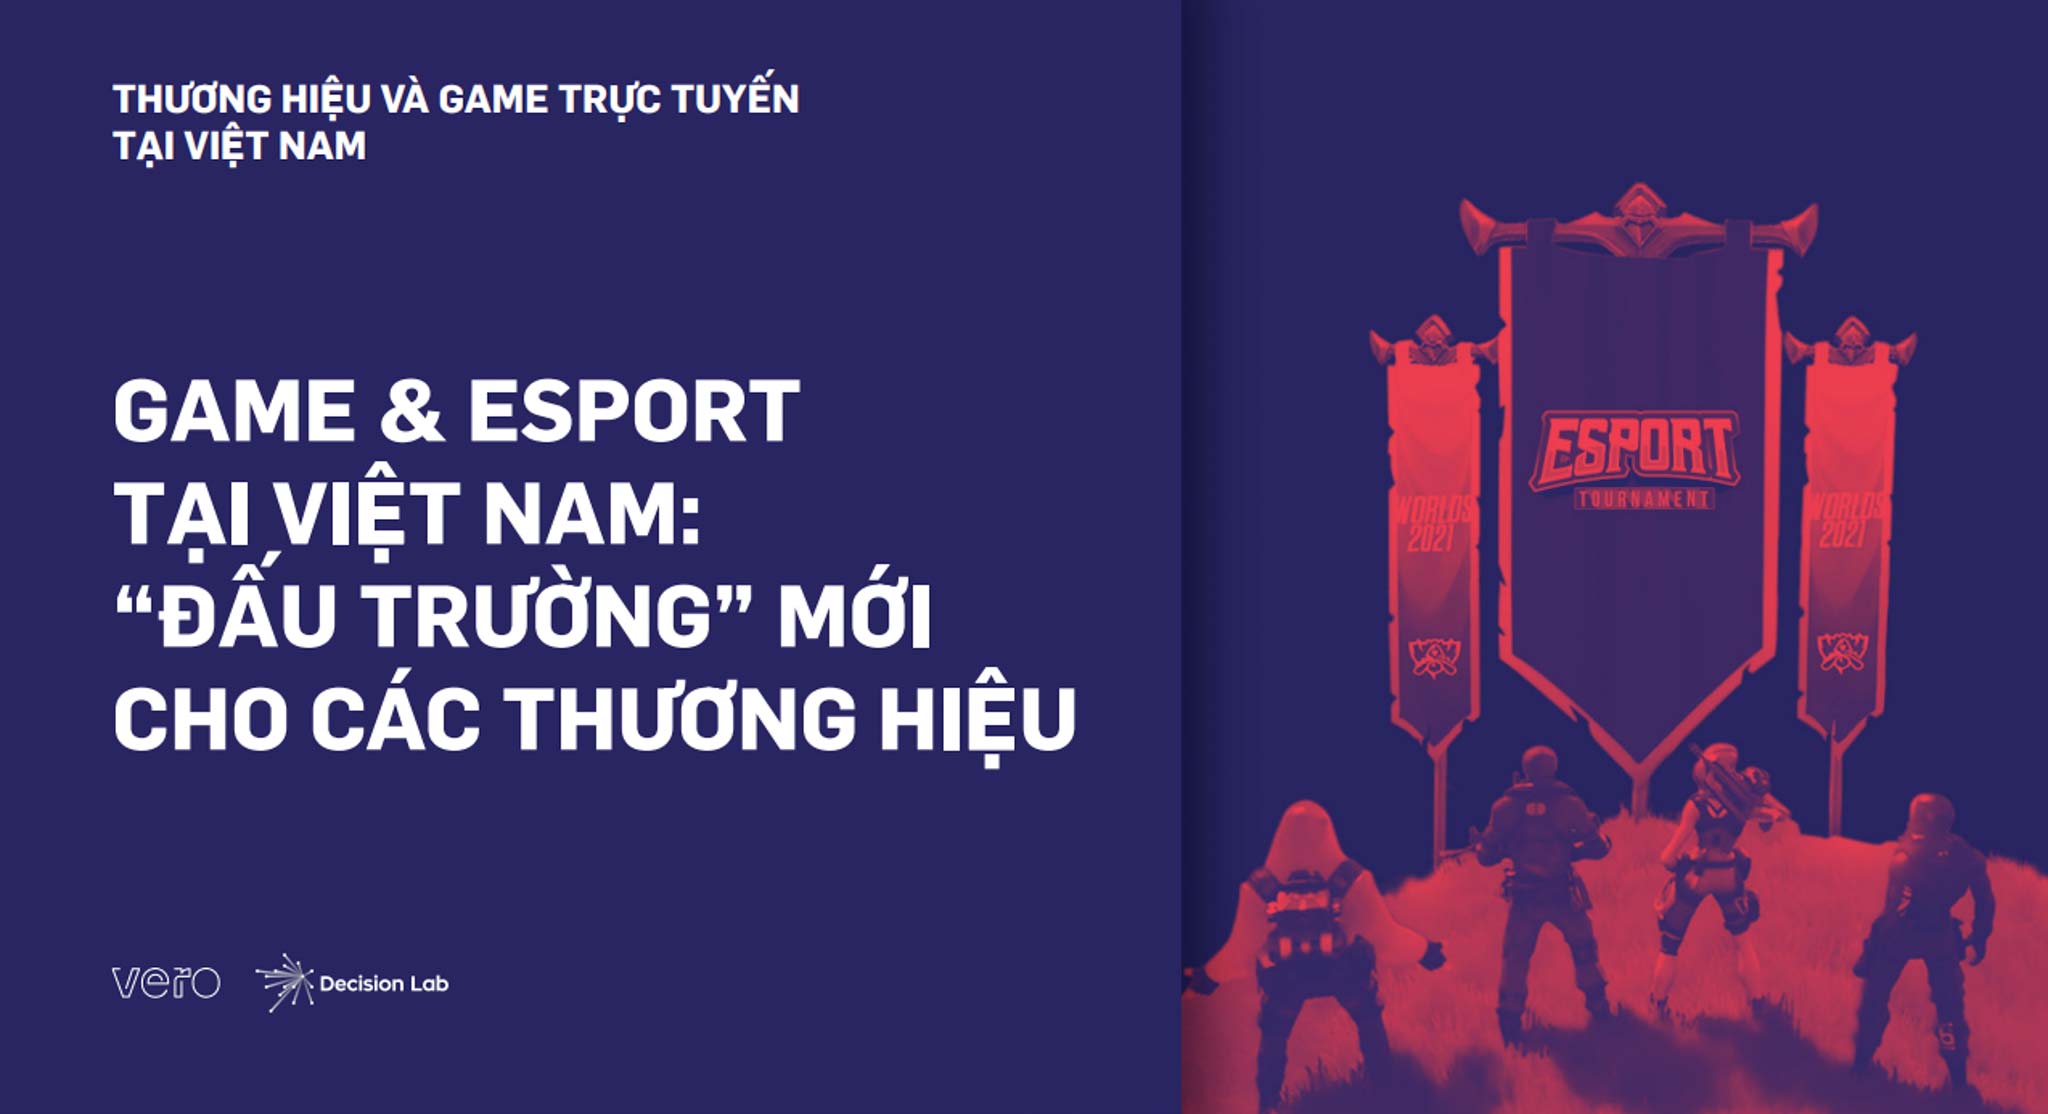 Vero chính thức ra mắt nghiên cứu thị trường về thể thao điện tử tại Việt Nam Esports Whitepaper 2021